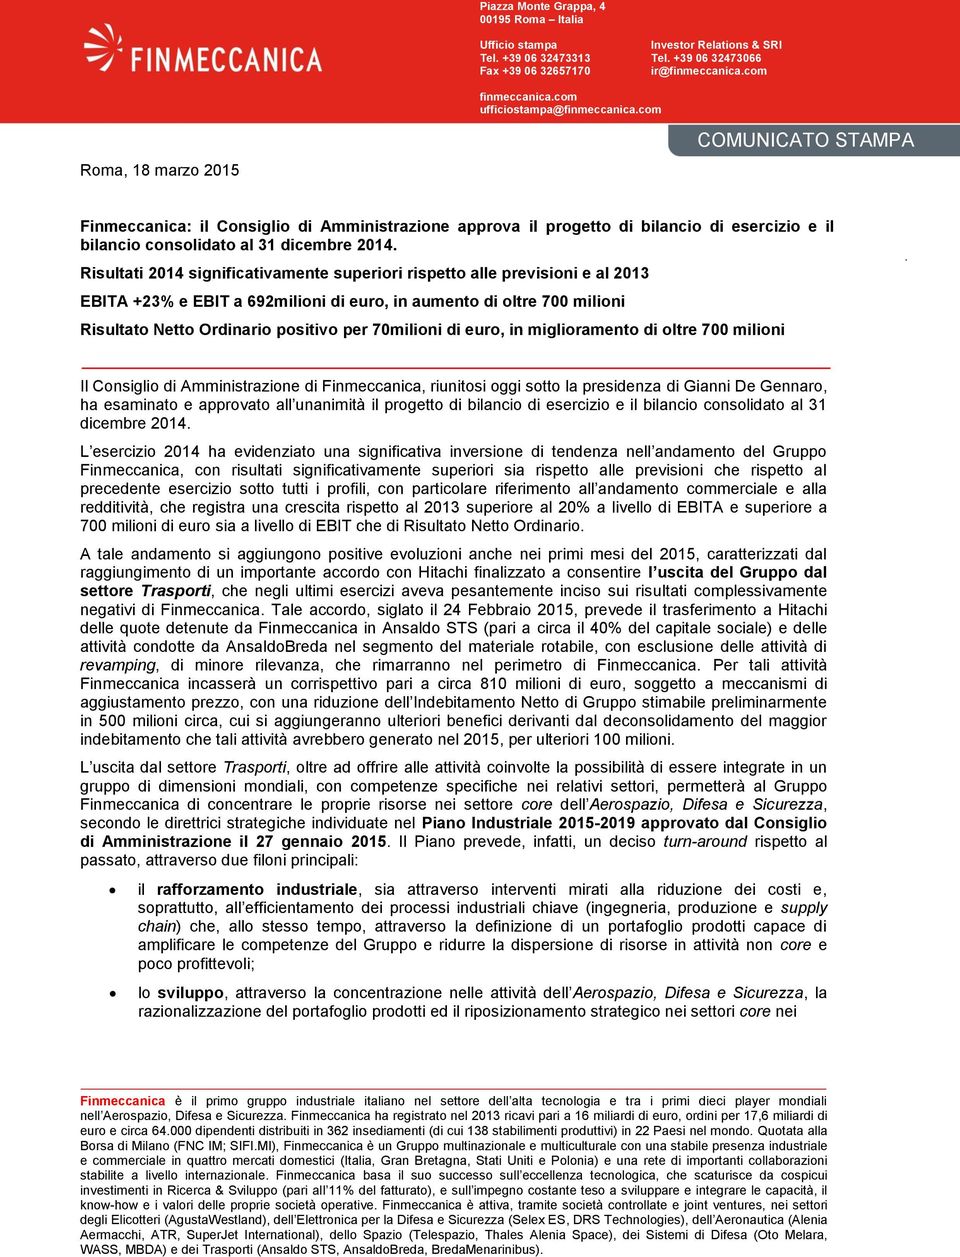 com Roma, 18 marzo 2015 COMUNICATO STAMPA Finmeccanica: il Consiglio di Amministrazione approva il progetto di bilancio di esercizio e il bilancio consolidato al 31 dicembre 2014.